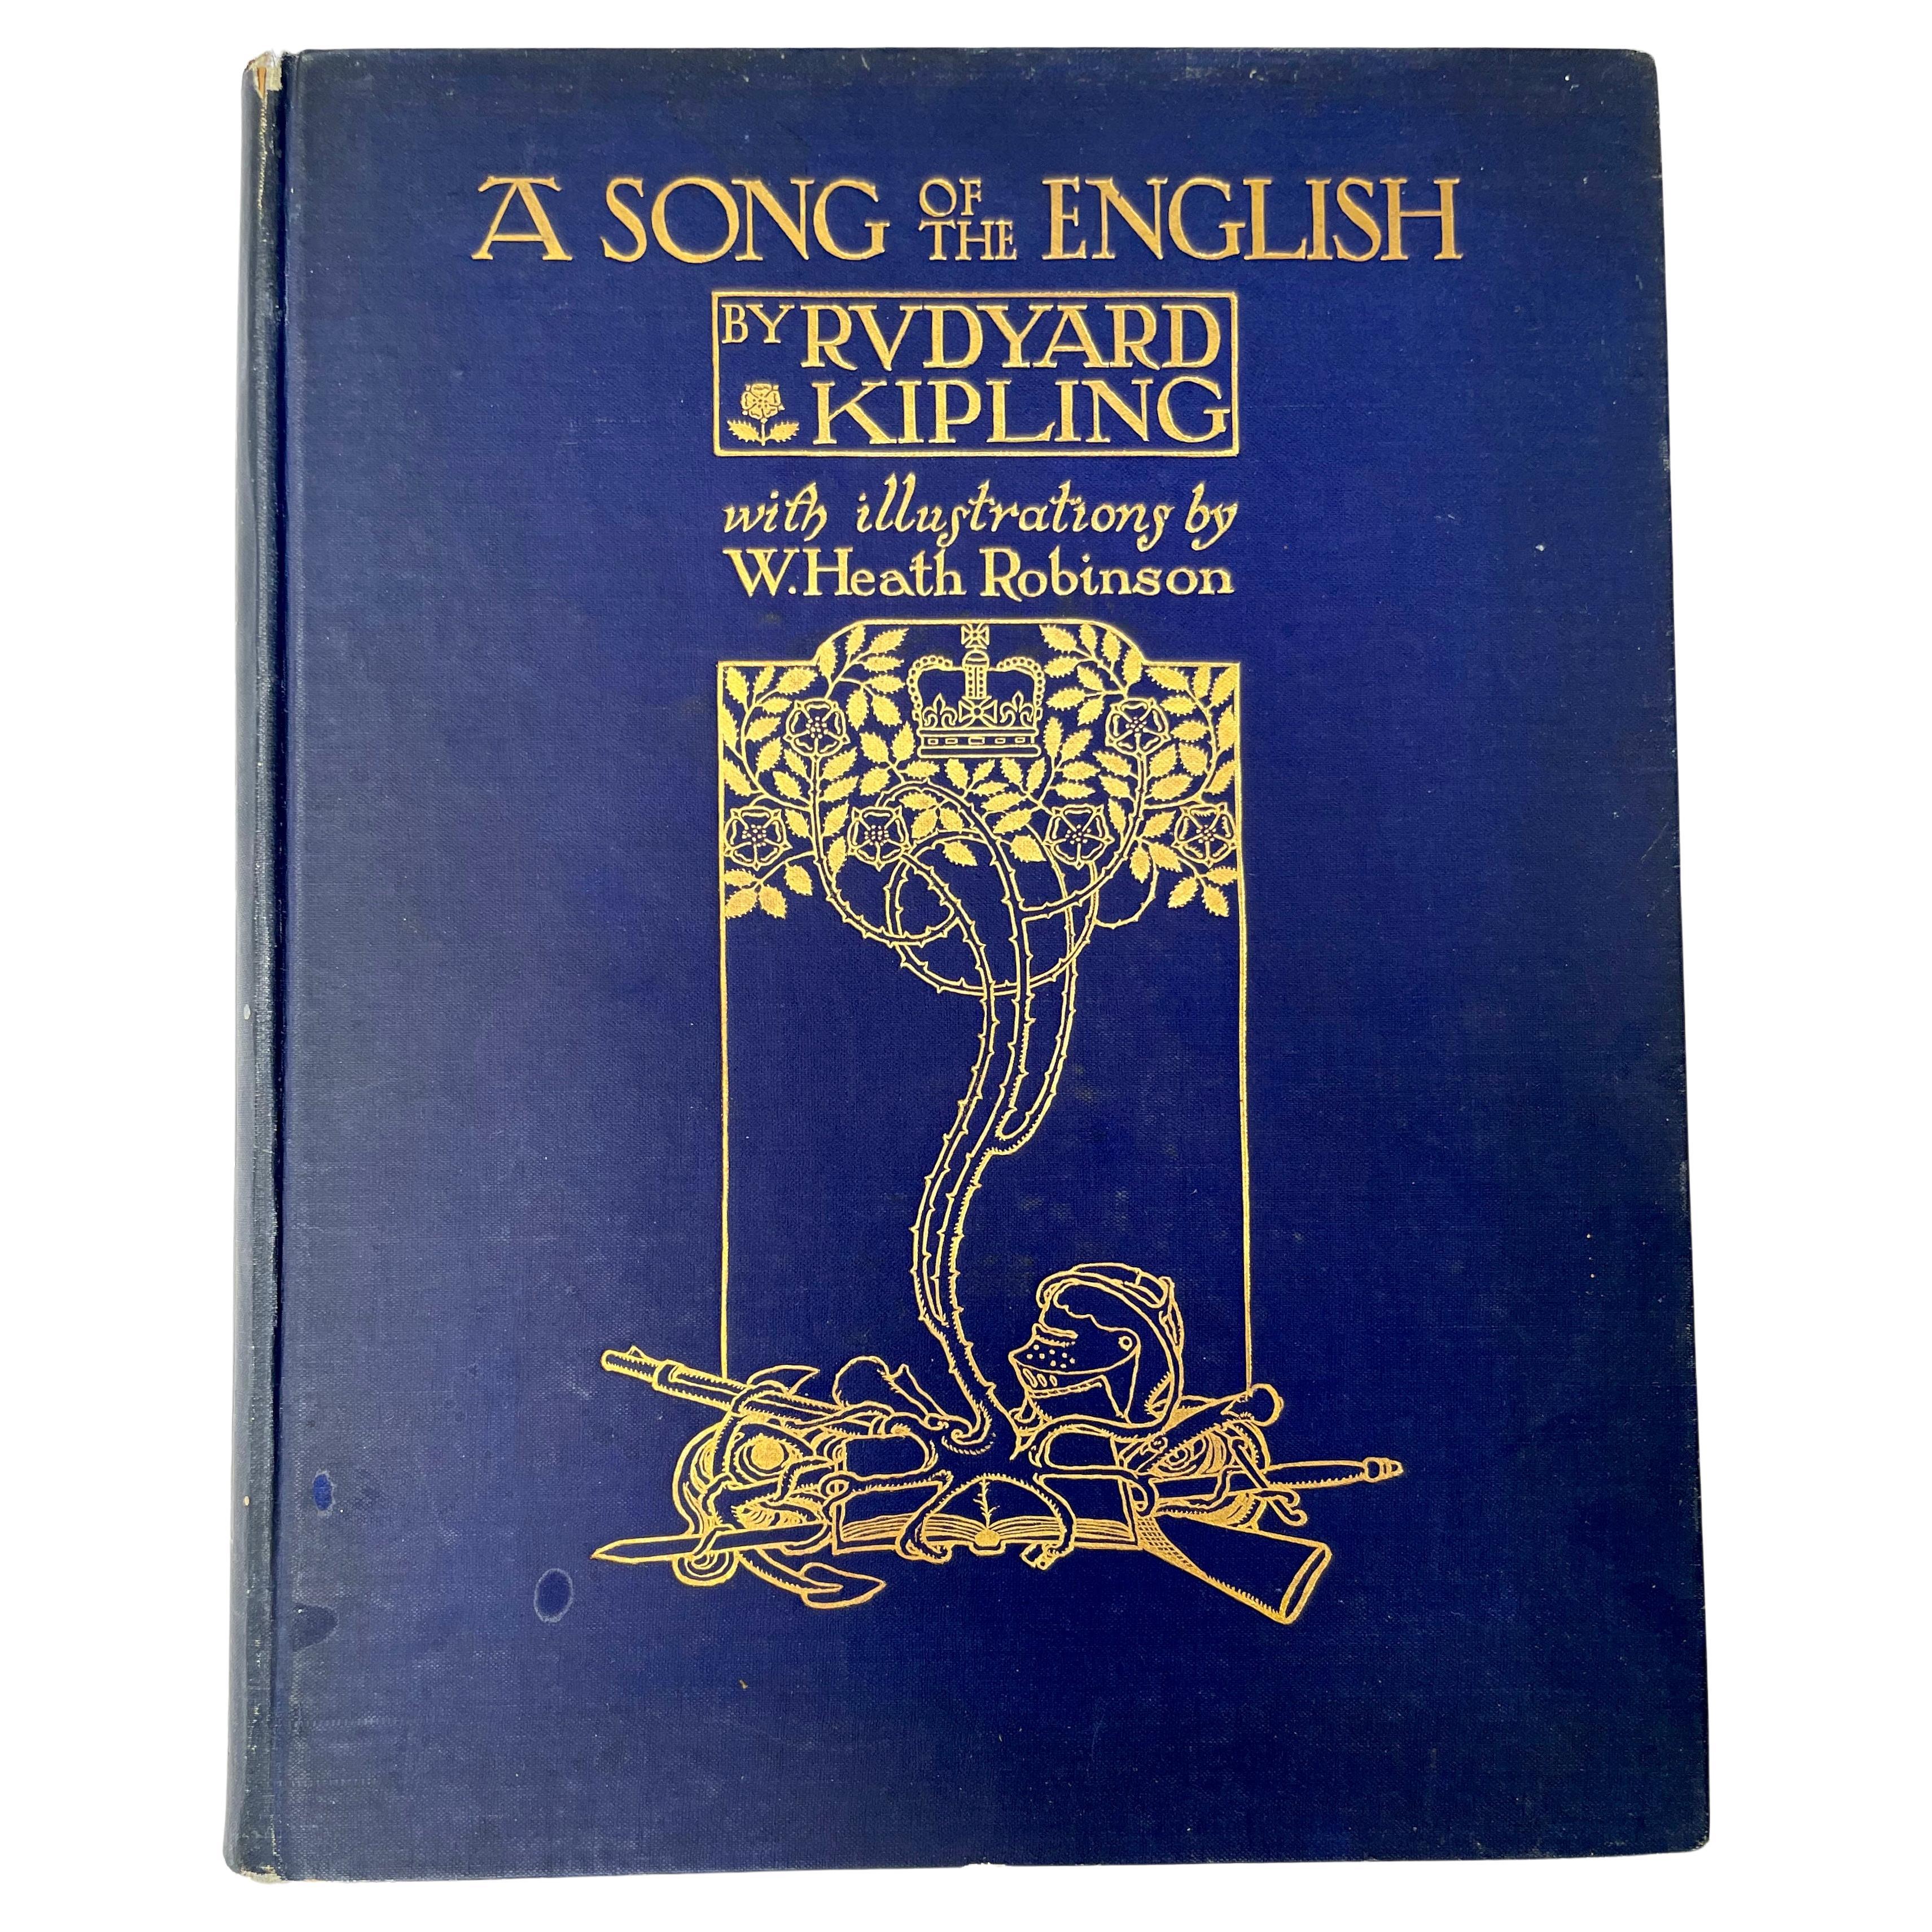 Première édition d'un chant de l'anglais par Rudyard Kipling